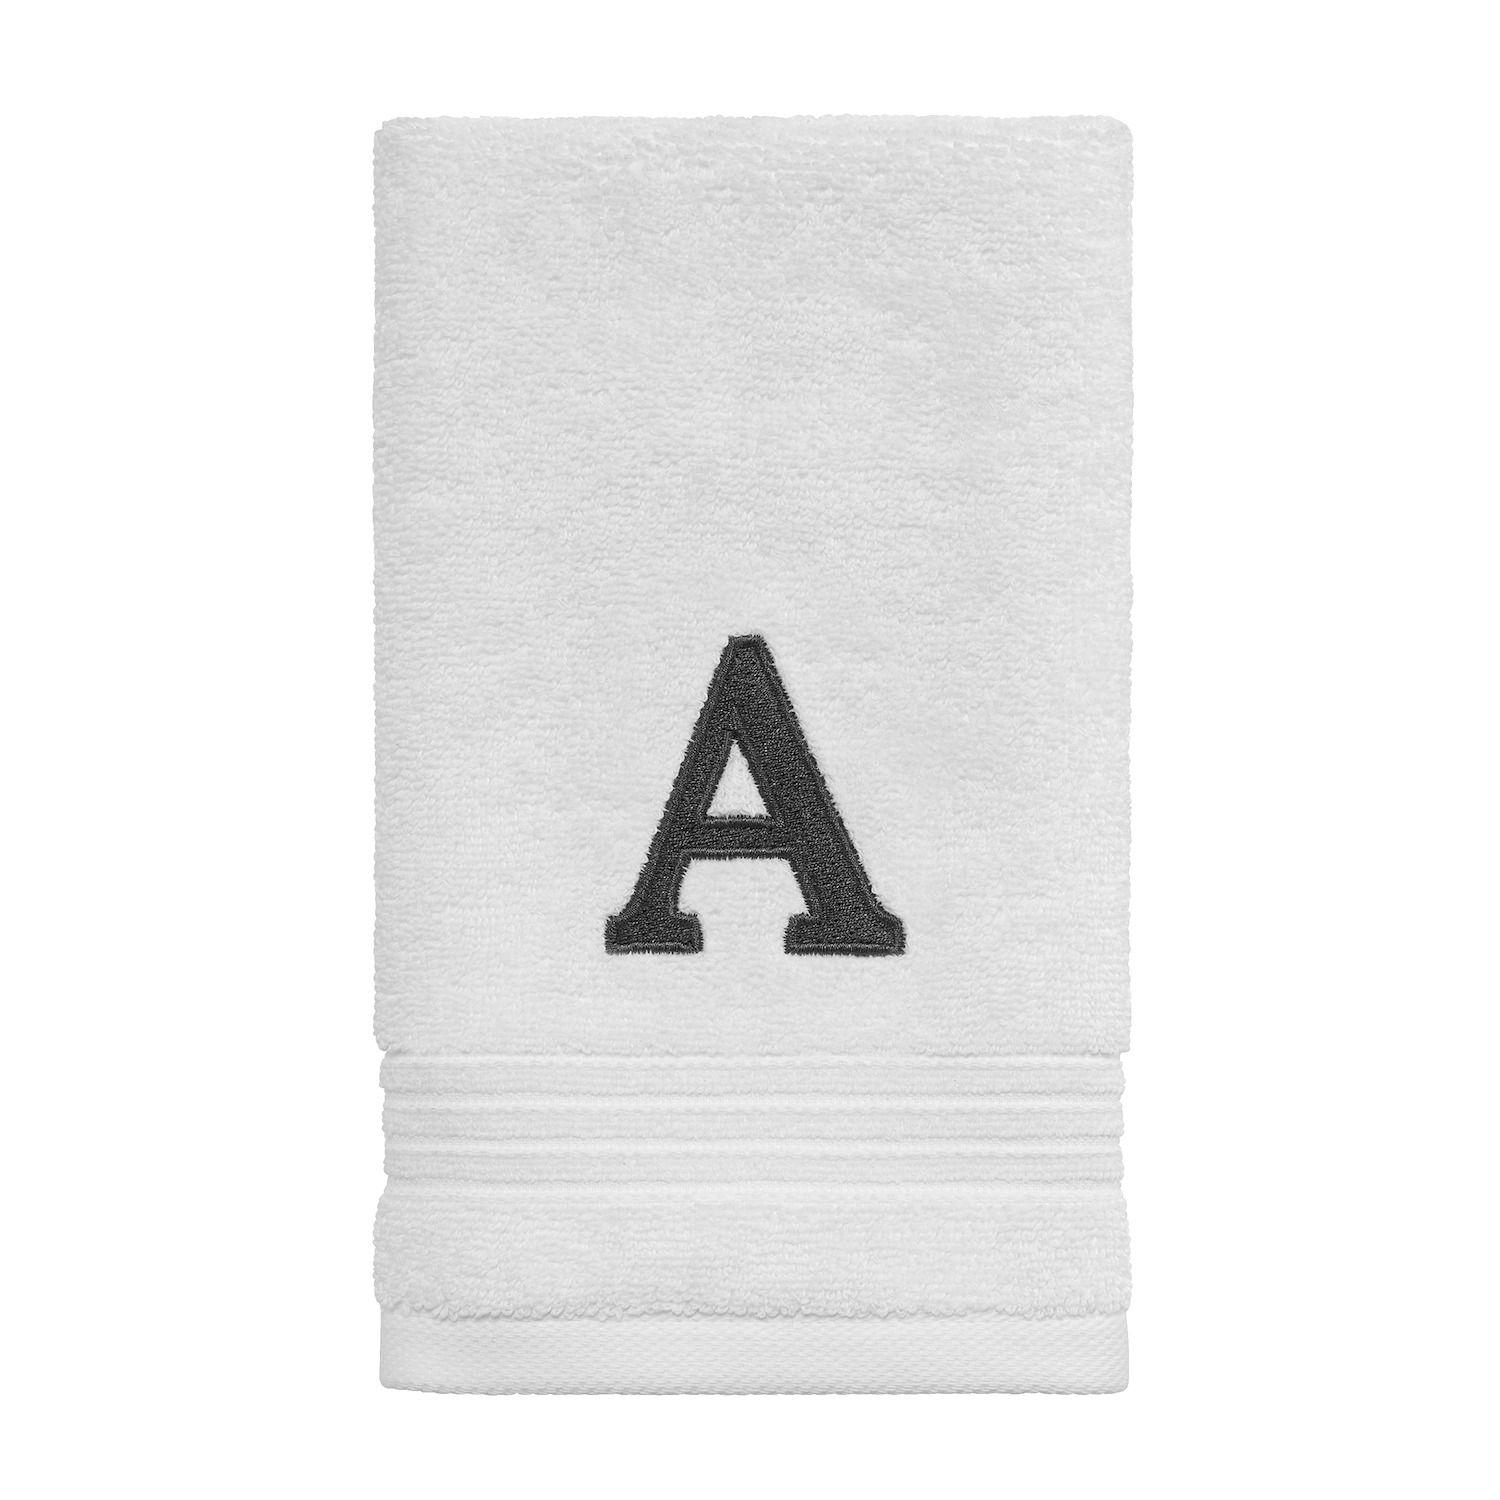 Полотенце на кончиках пальцев Avanti Monogram полотенце для пальцев avanti chalk it up с вышивкой